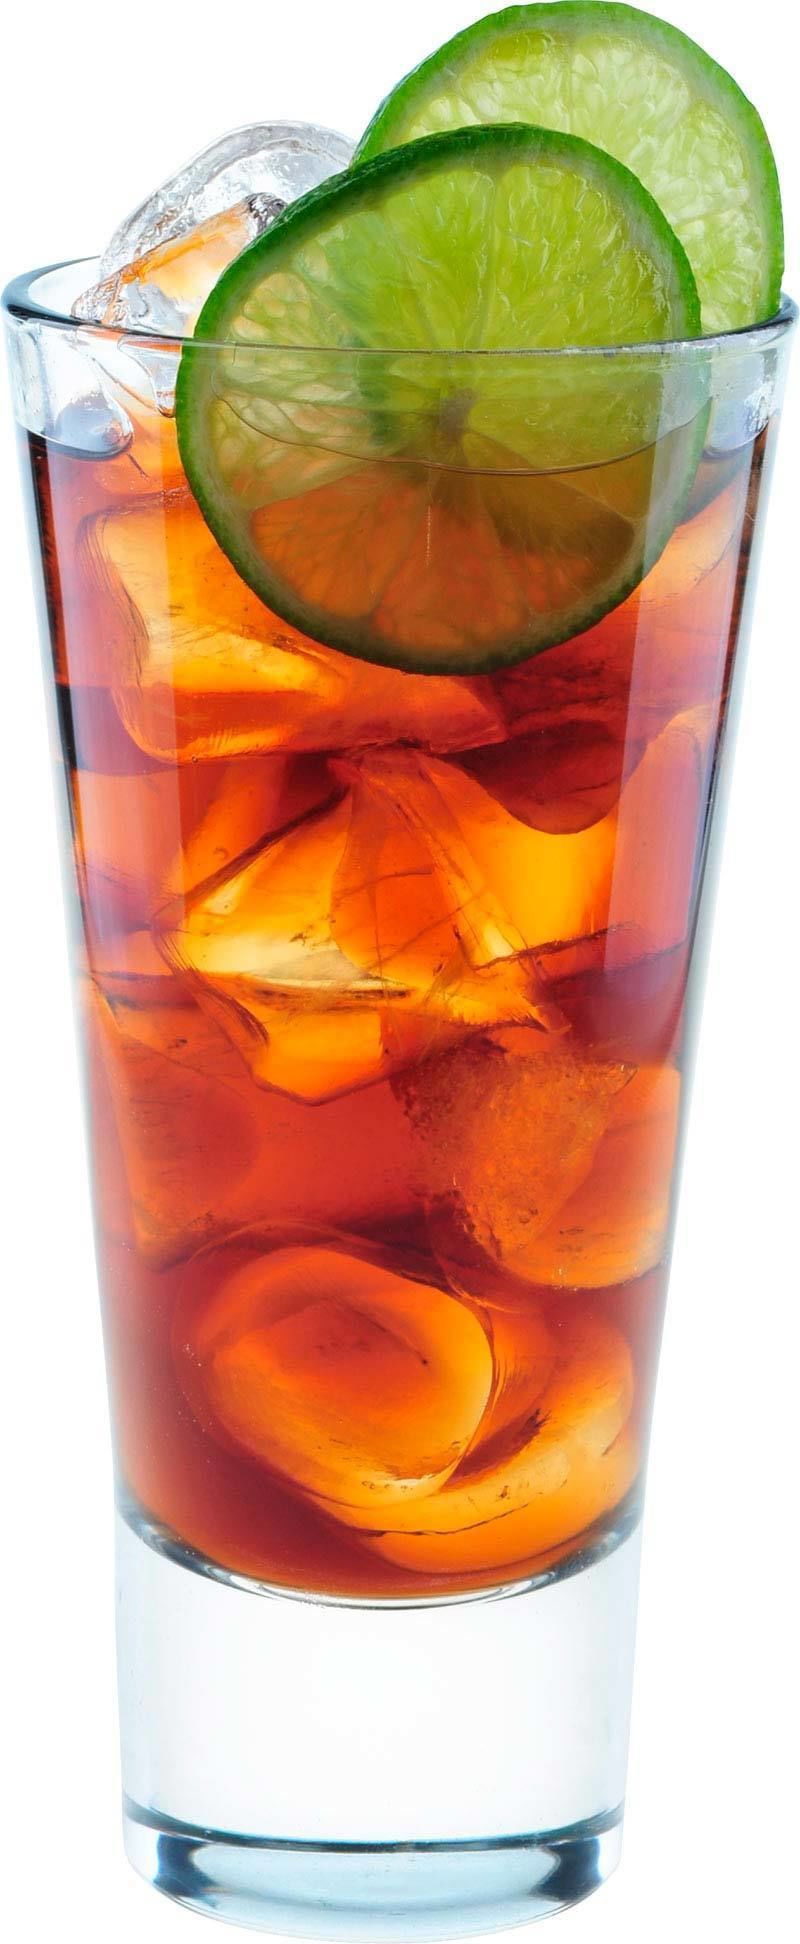 Wie macht man den Dunkler Rum und Cola